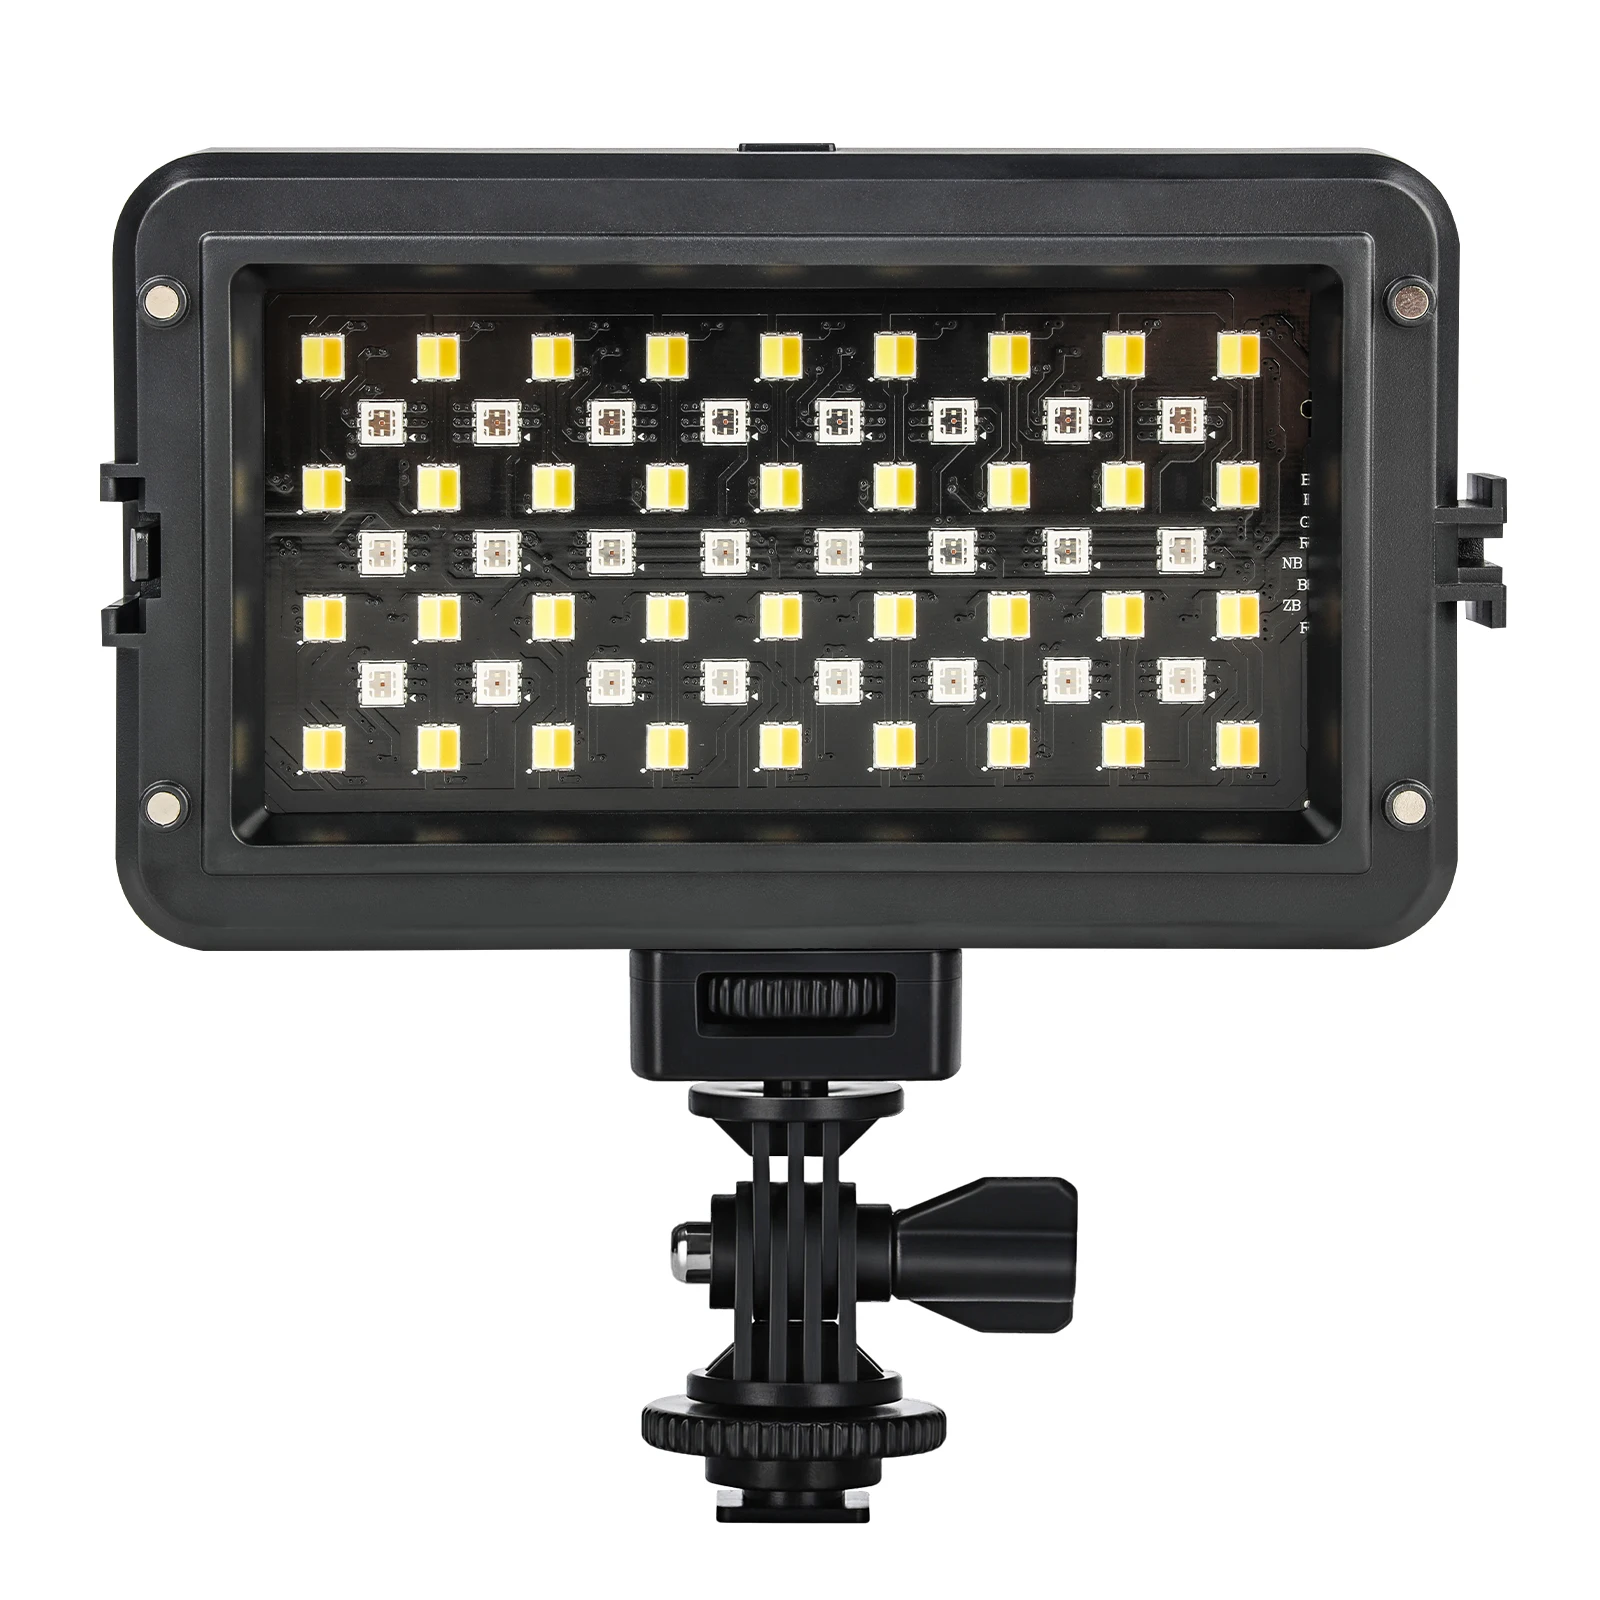 Viltorx RB10 RGB LED Video Light Full Colors Dimmable Lighting Fill Lights Built-in Battery for DSLR Camera Photo Studio YouTube enlarge